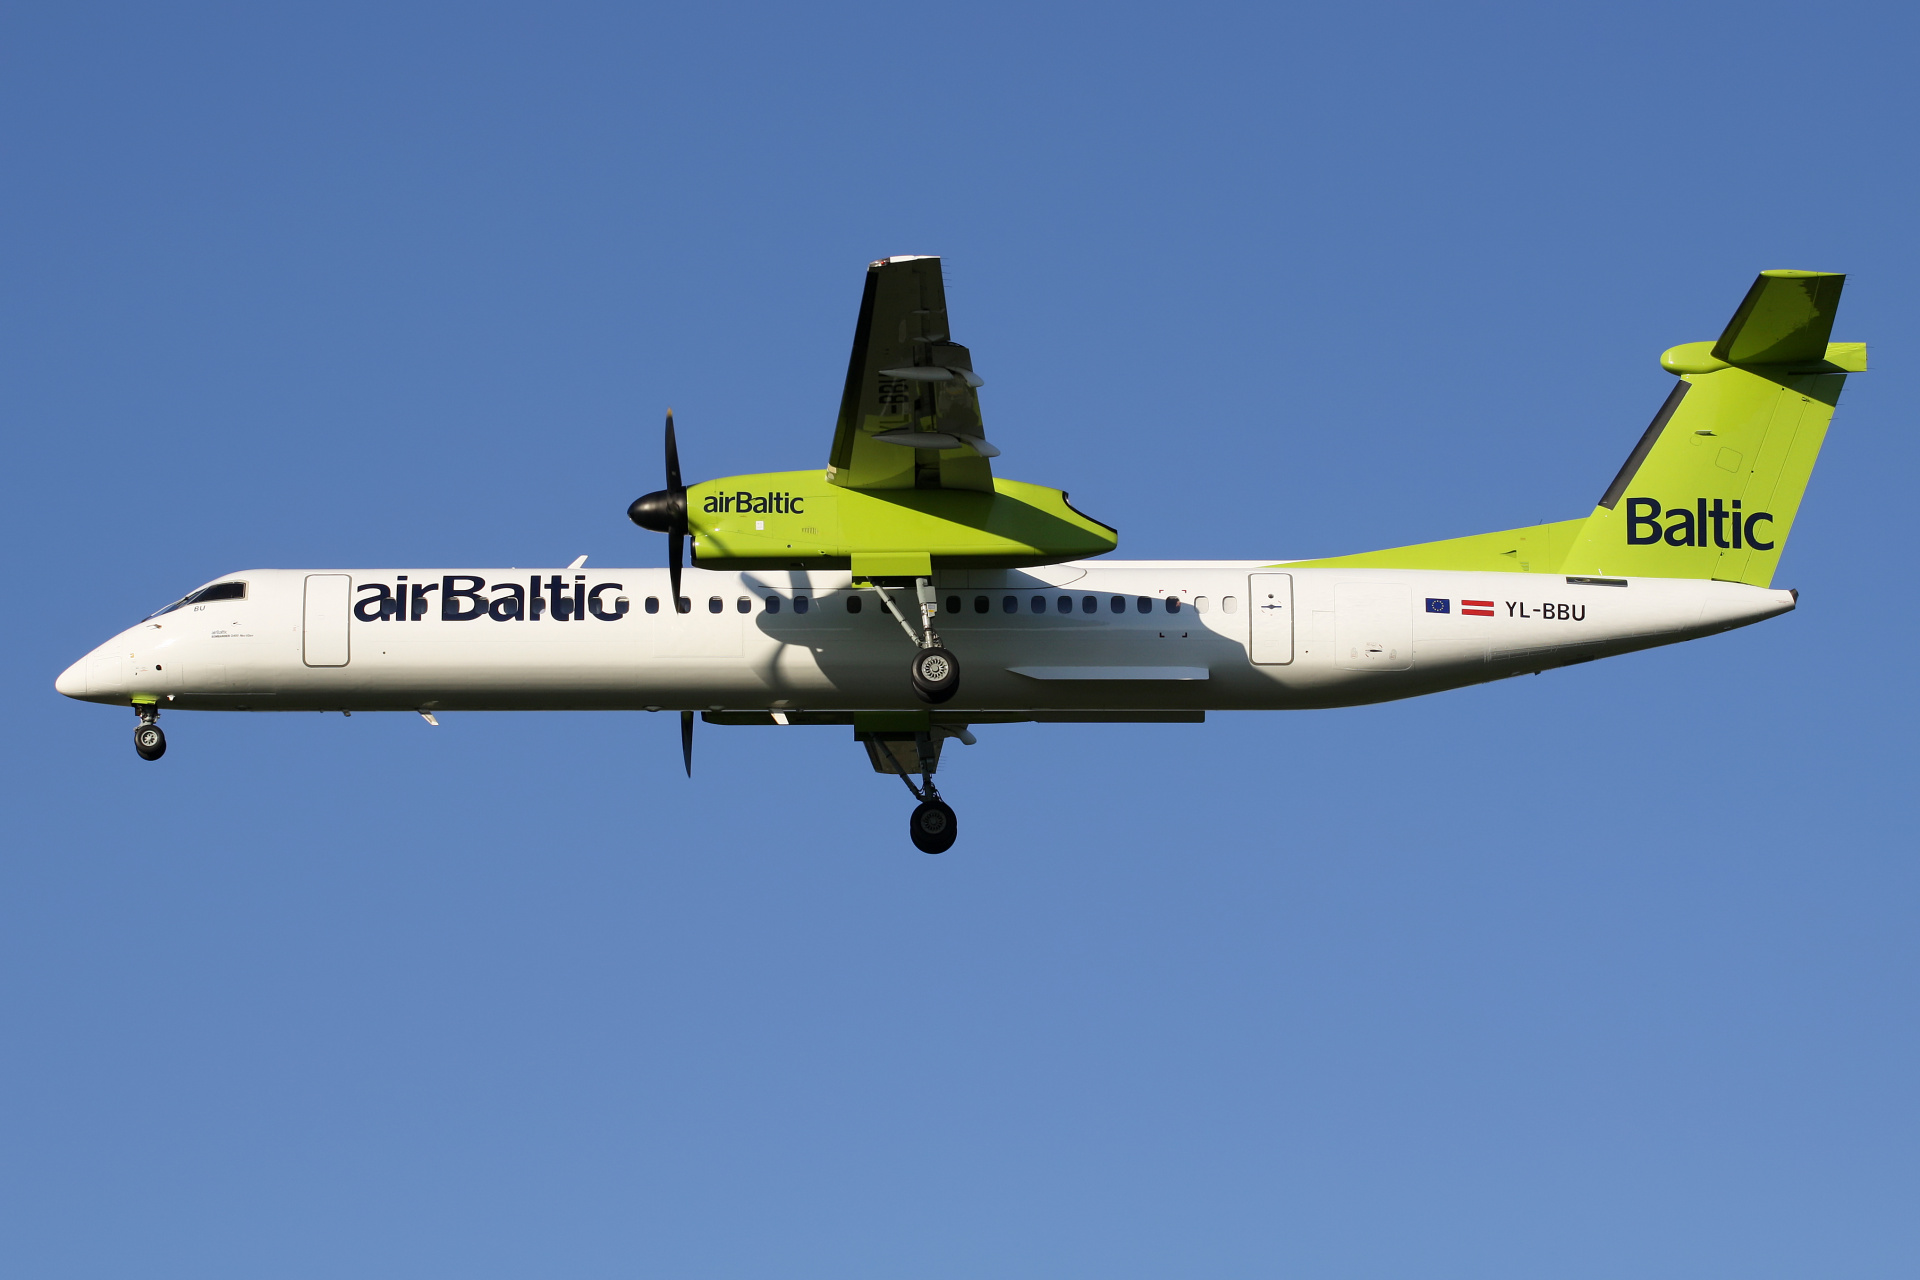 YL-BBU (Aircraft » EPWA Spotting » De Havilland Canada DHC-8 Dash 8 » airBaltic)